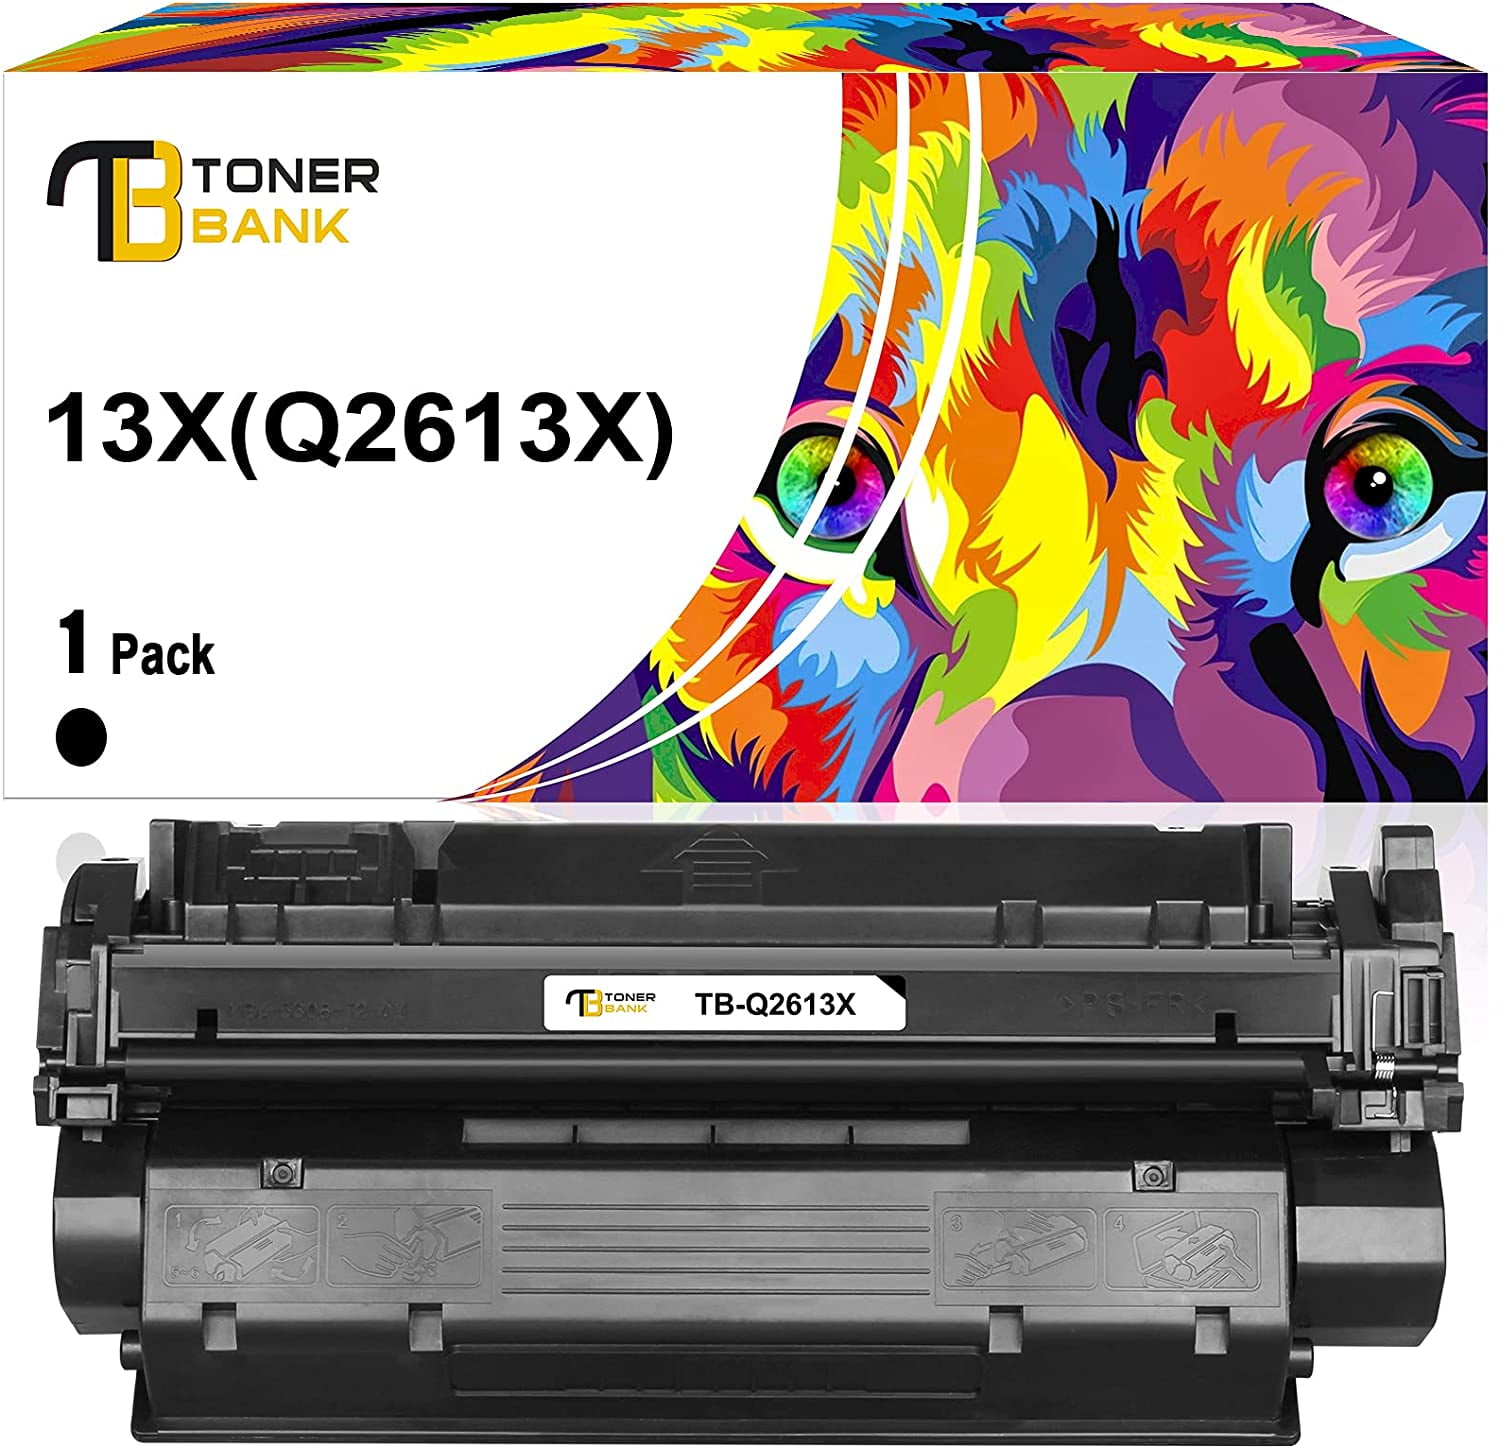 Toner Bank Compatible Toner for HP 13X Q2613X LaserJet 1300 1300n 1300xi Printer Toner Ink (Black, 1-Pack) - Walmart.com